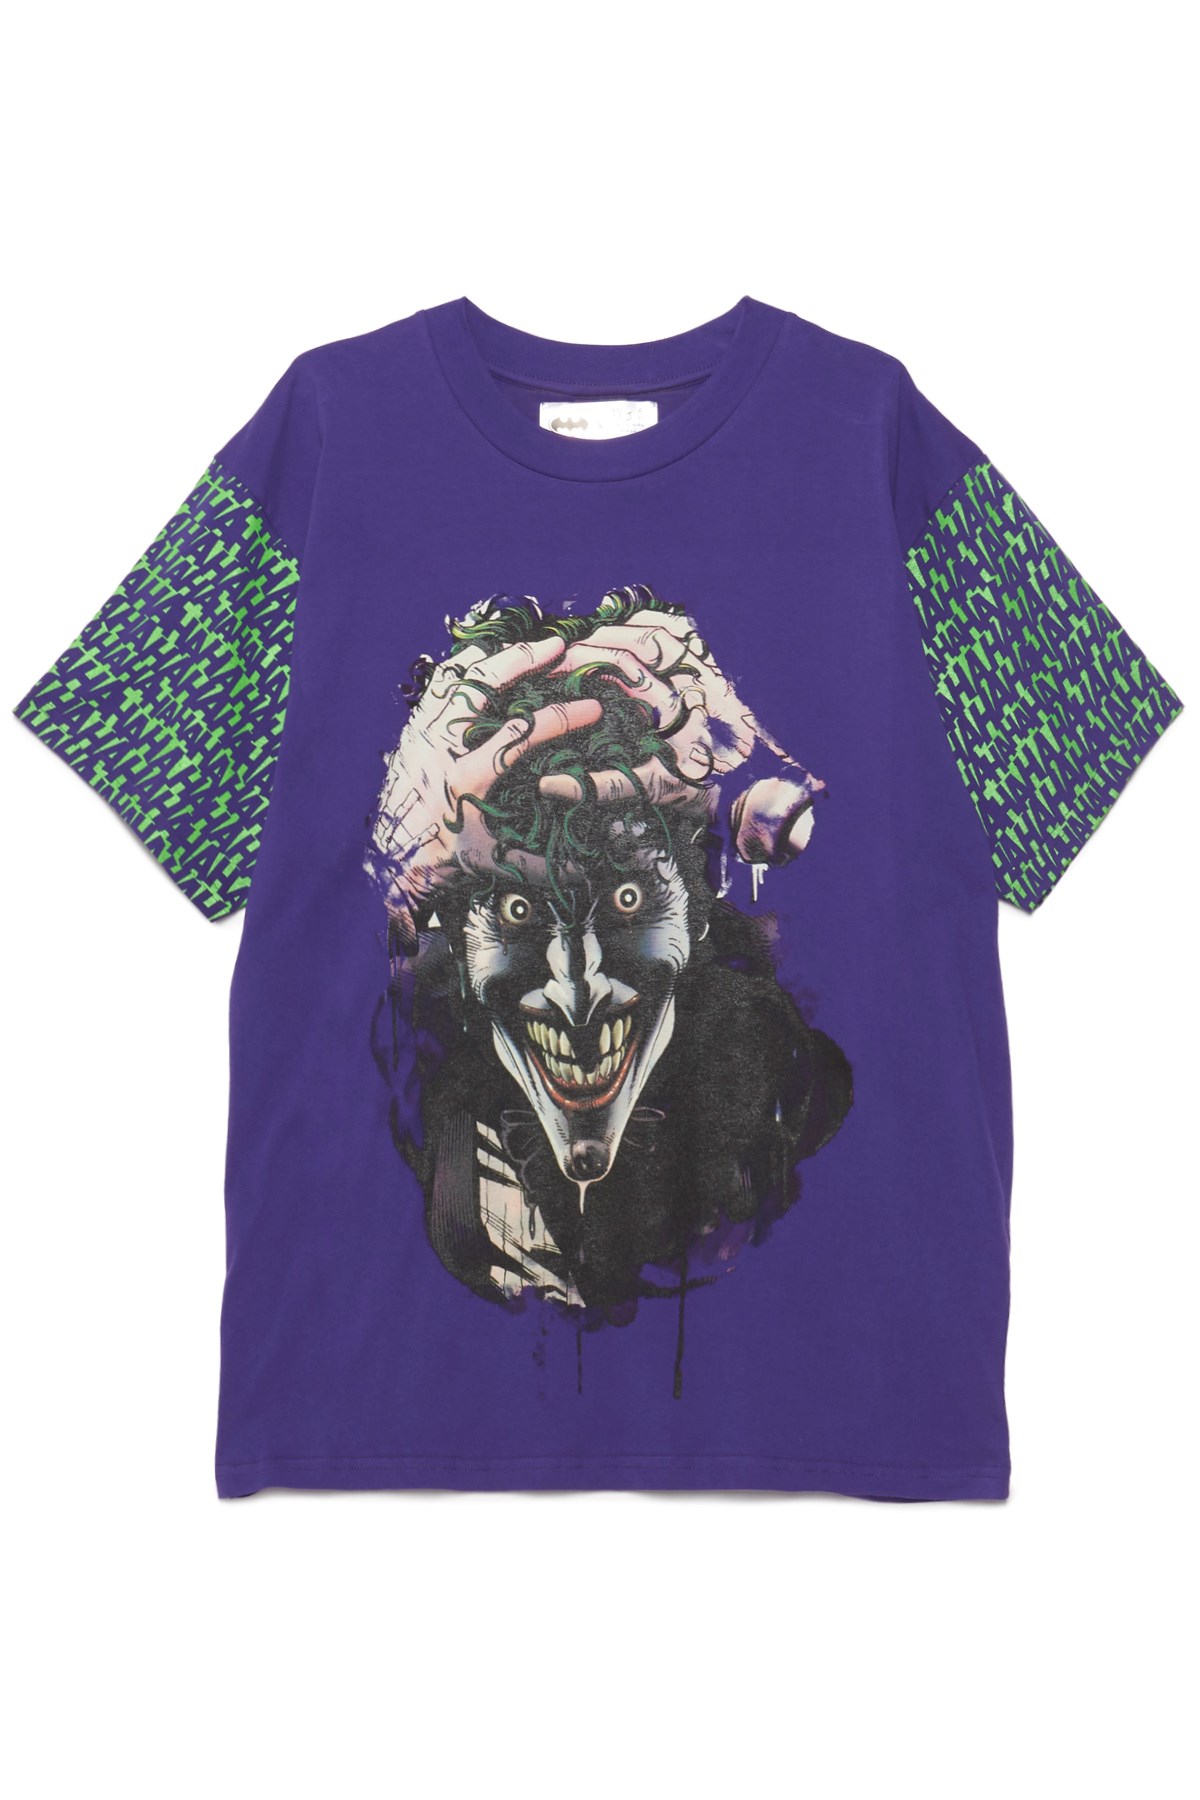 MJB MARC JACQUES BURTON 'Joker' Print T-Shirt